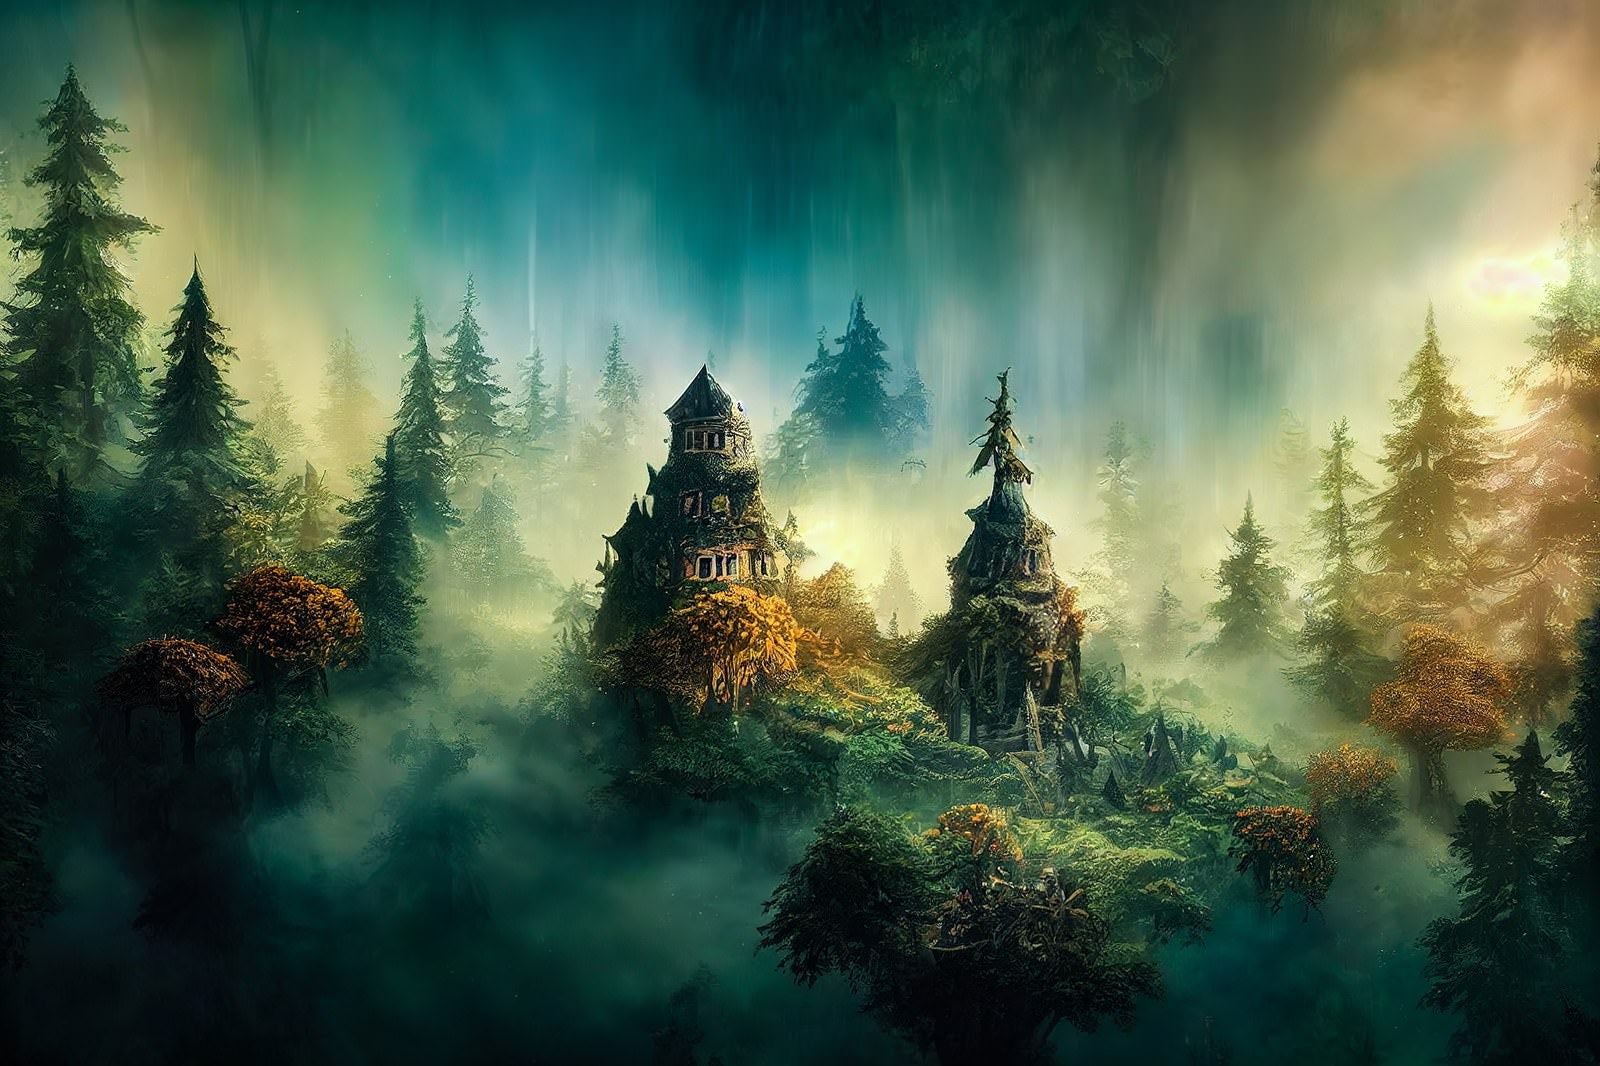 「濃霧に包まれた魔女の家」の写真